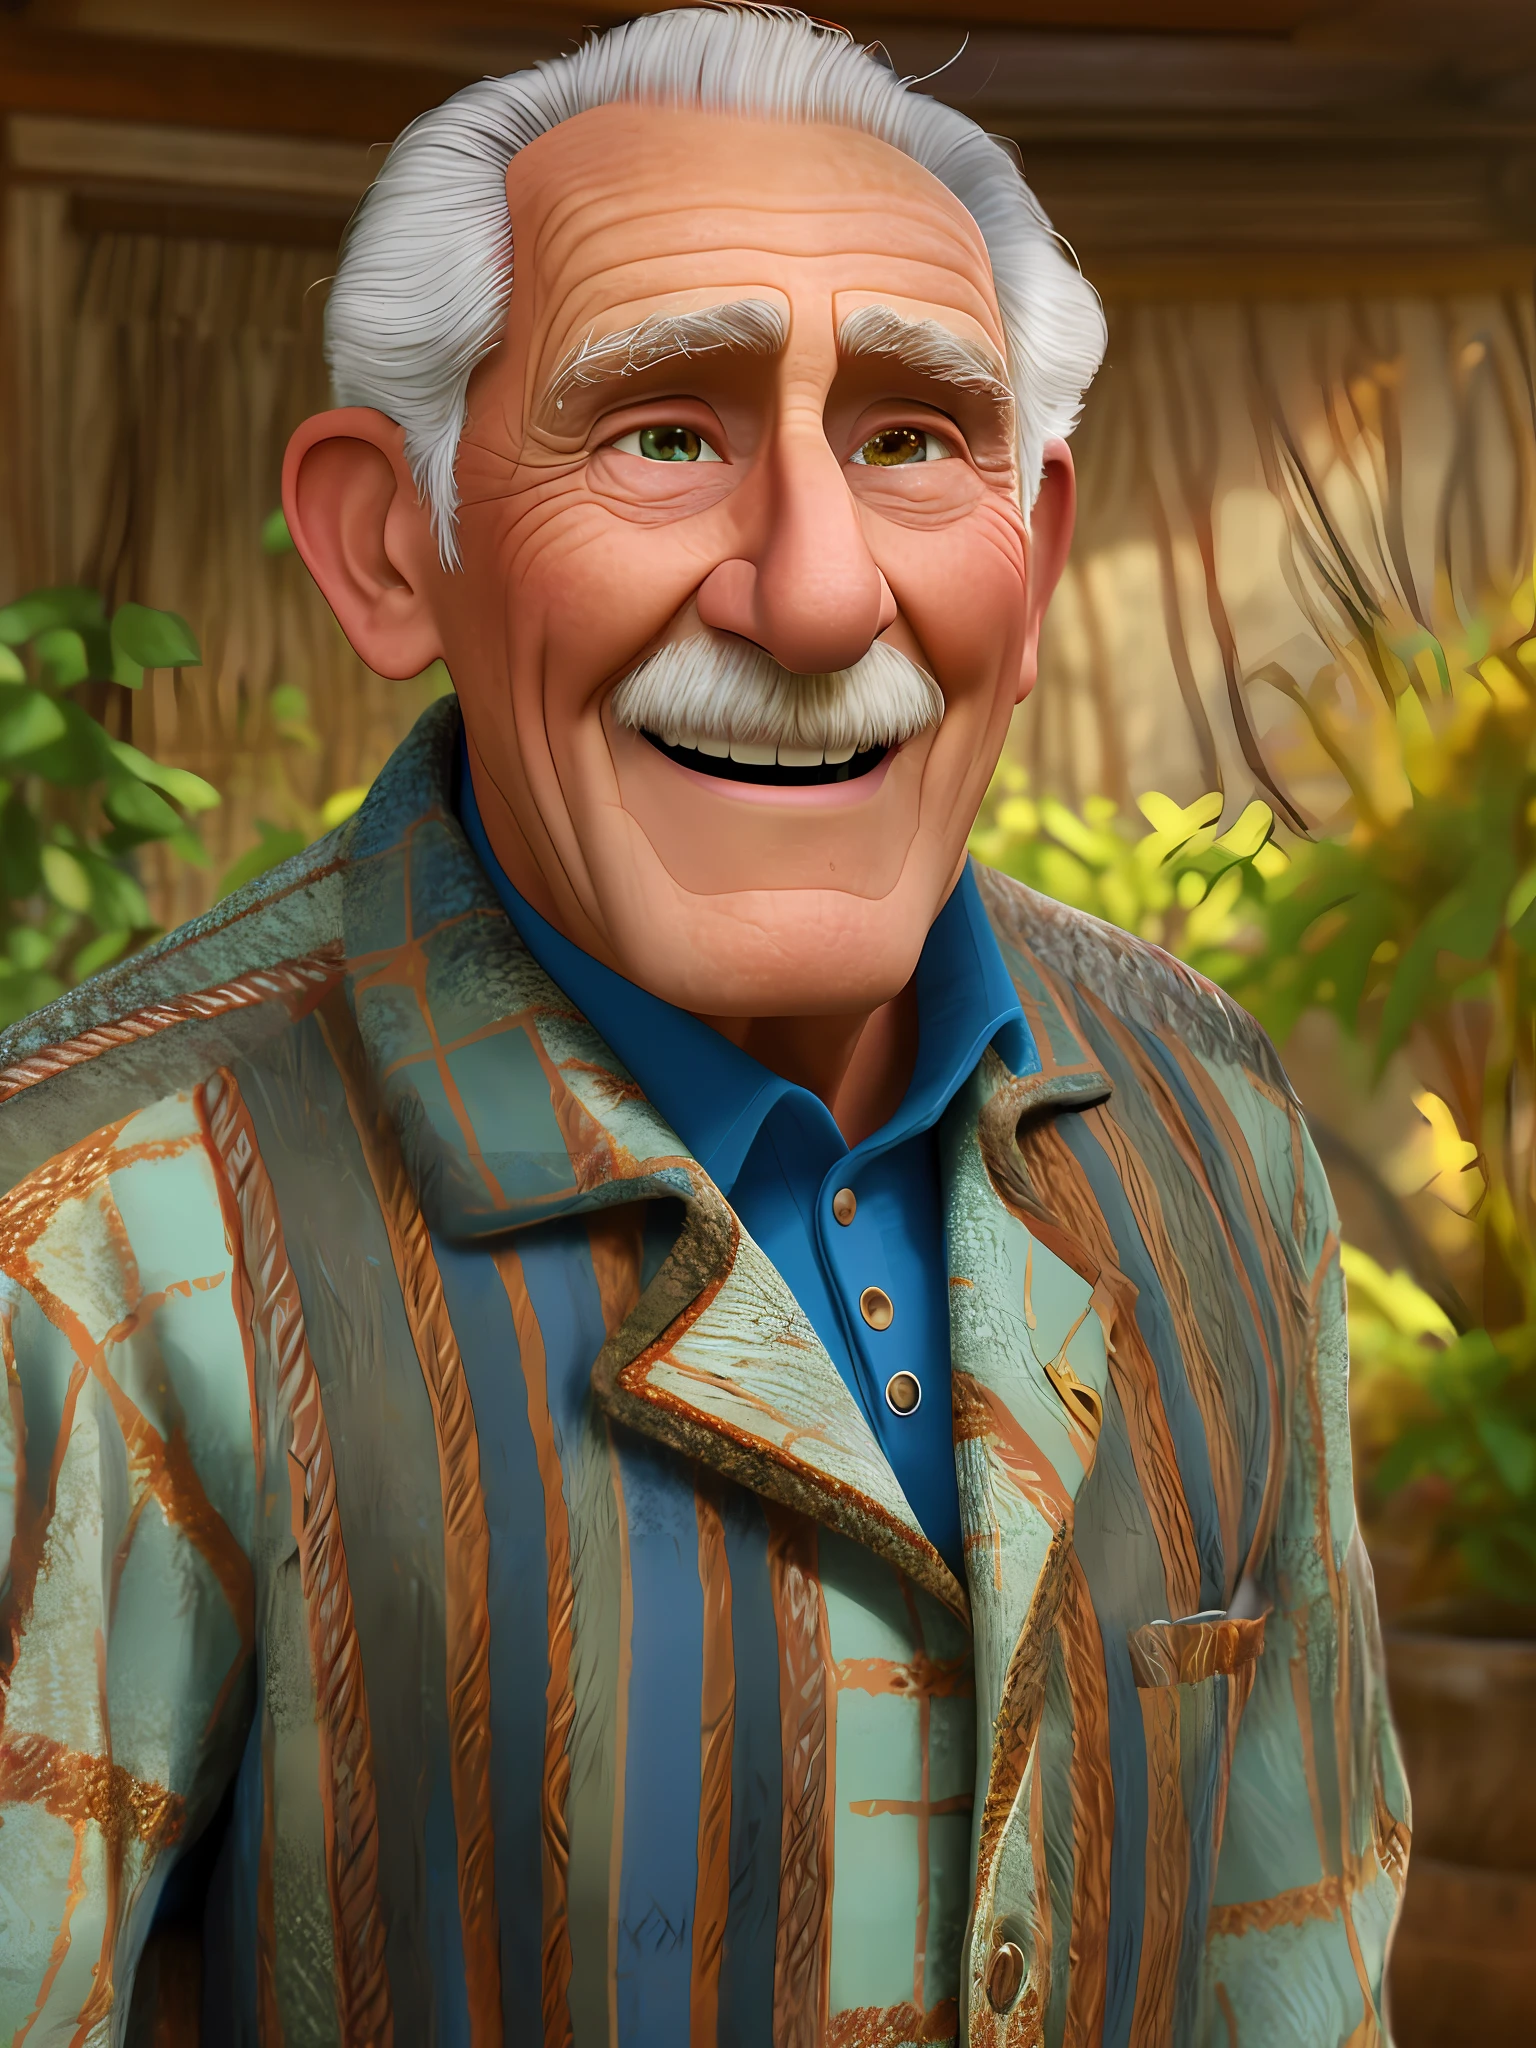 Pixarstyle Портрет пожилого мужчины в социальной одежде высотой по пояс., улыбка, Естественная текстура кожи, 4к текстуры, HDR, сложный, очень подробный, острый фокус, кинематографический вид, сверхдетализированный